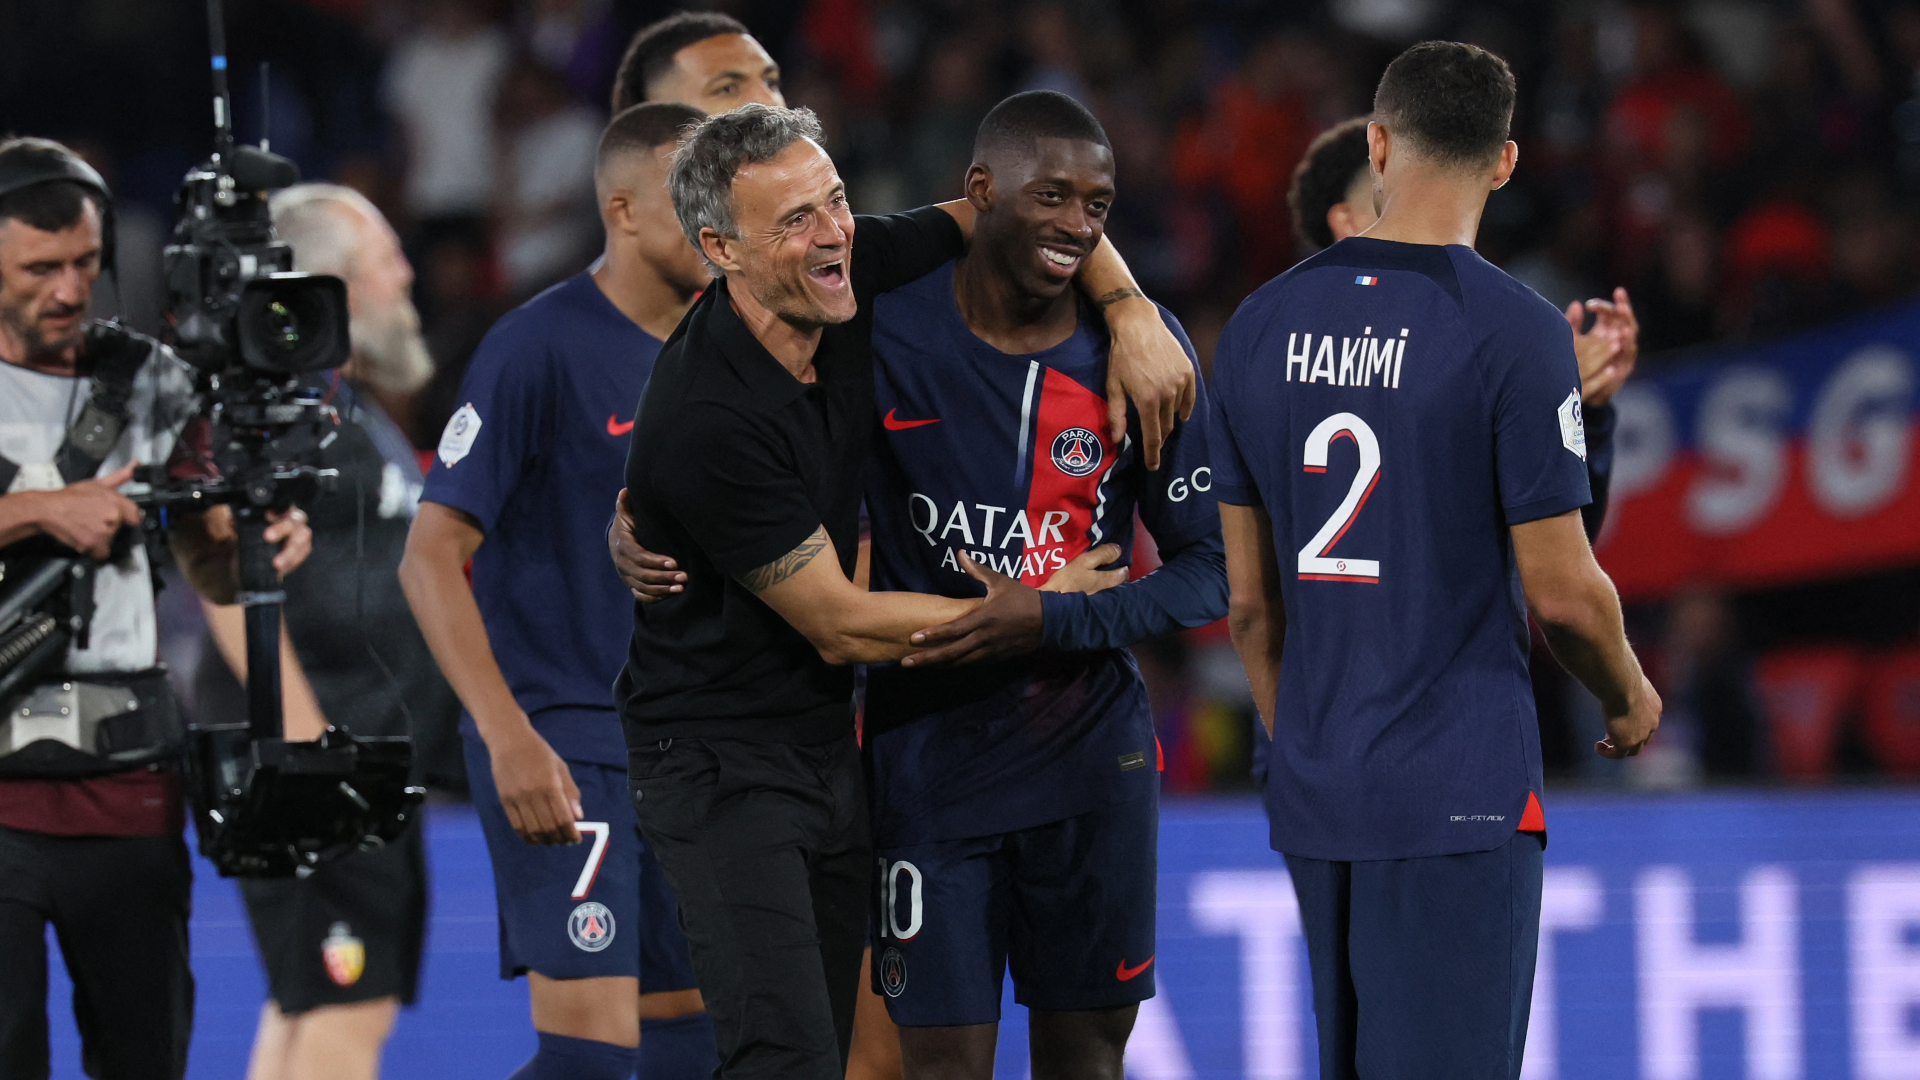 PSG's Luis Enrique Talks Coaching Dembélé, Mbappé, & KoloMuani